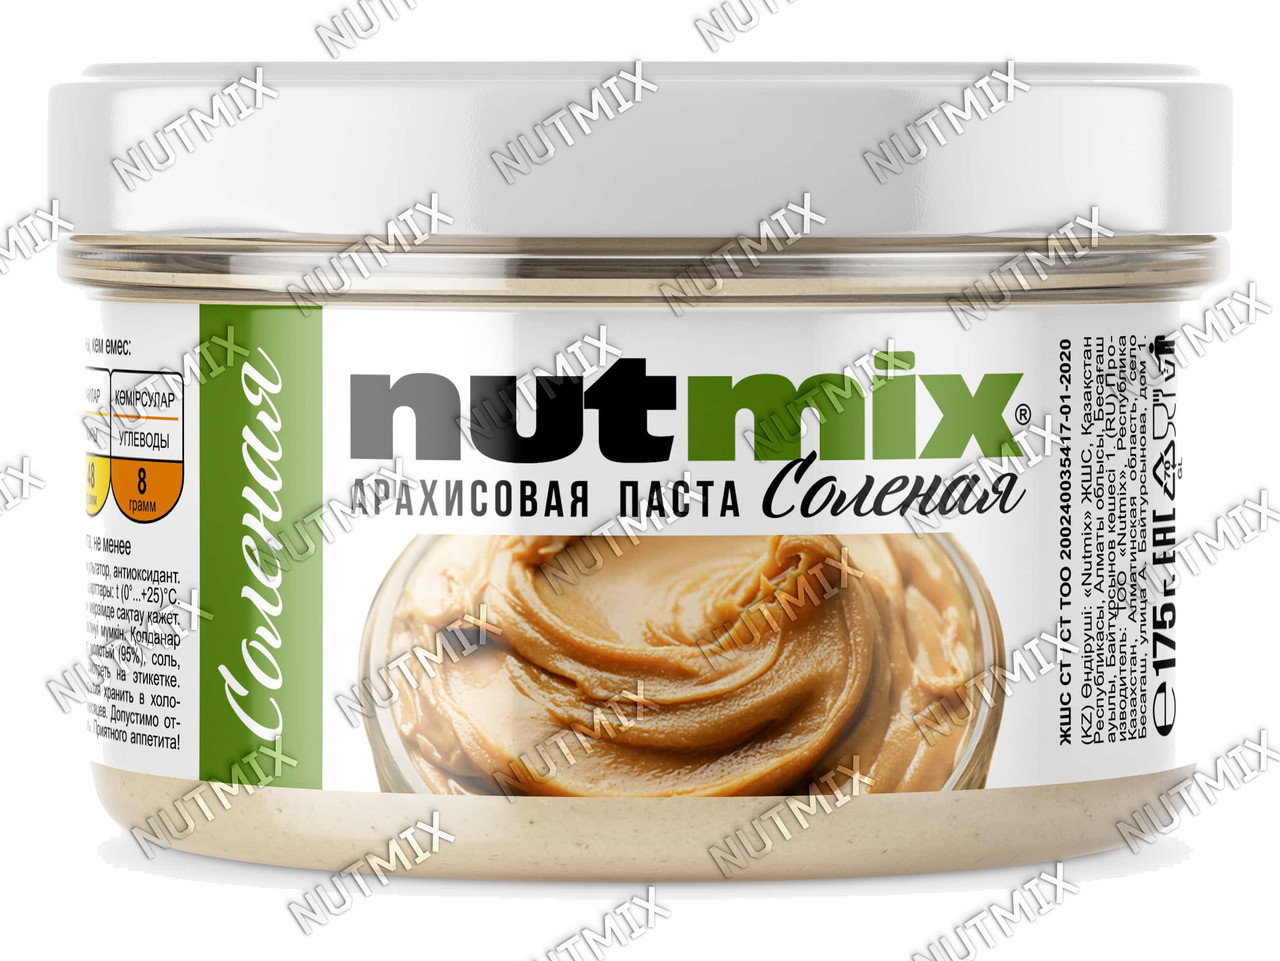 Арахисовая паста NutMix соленая 175 гр